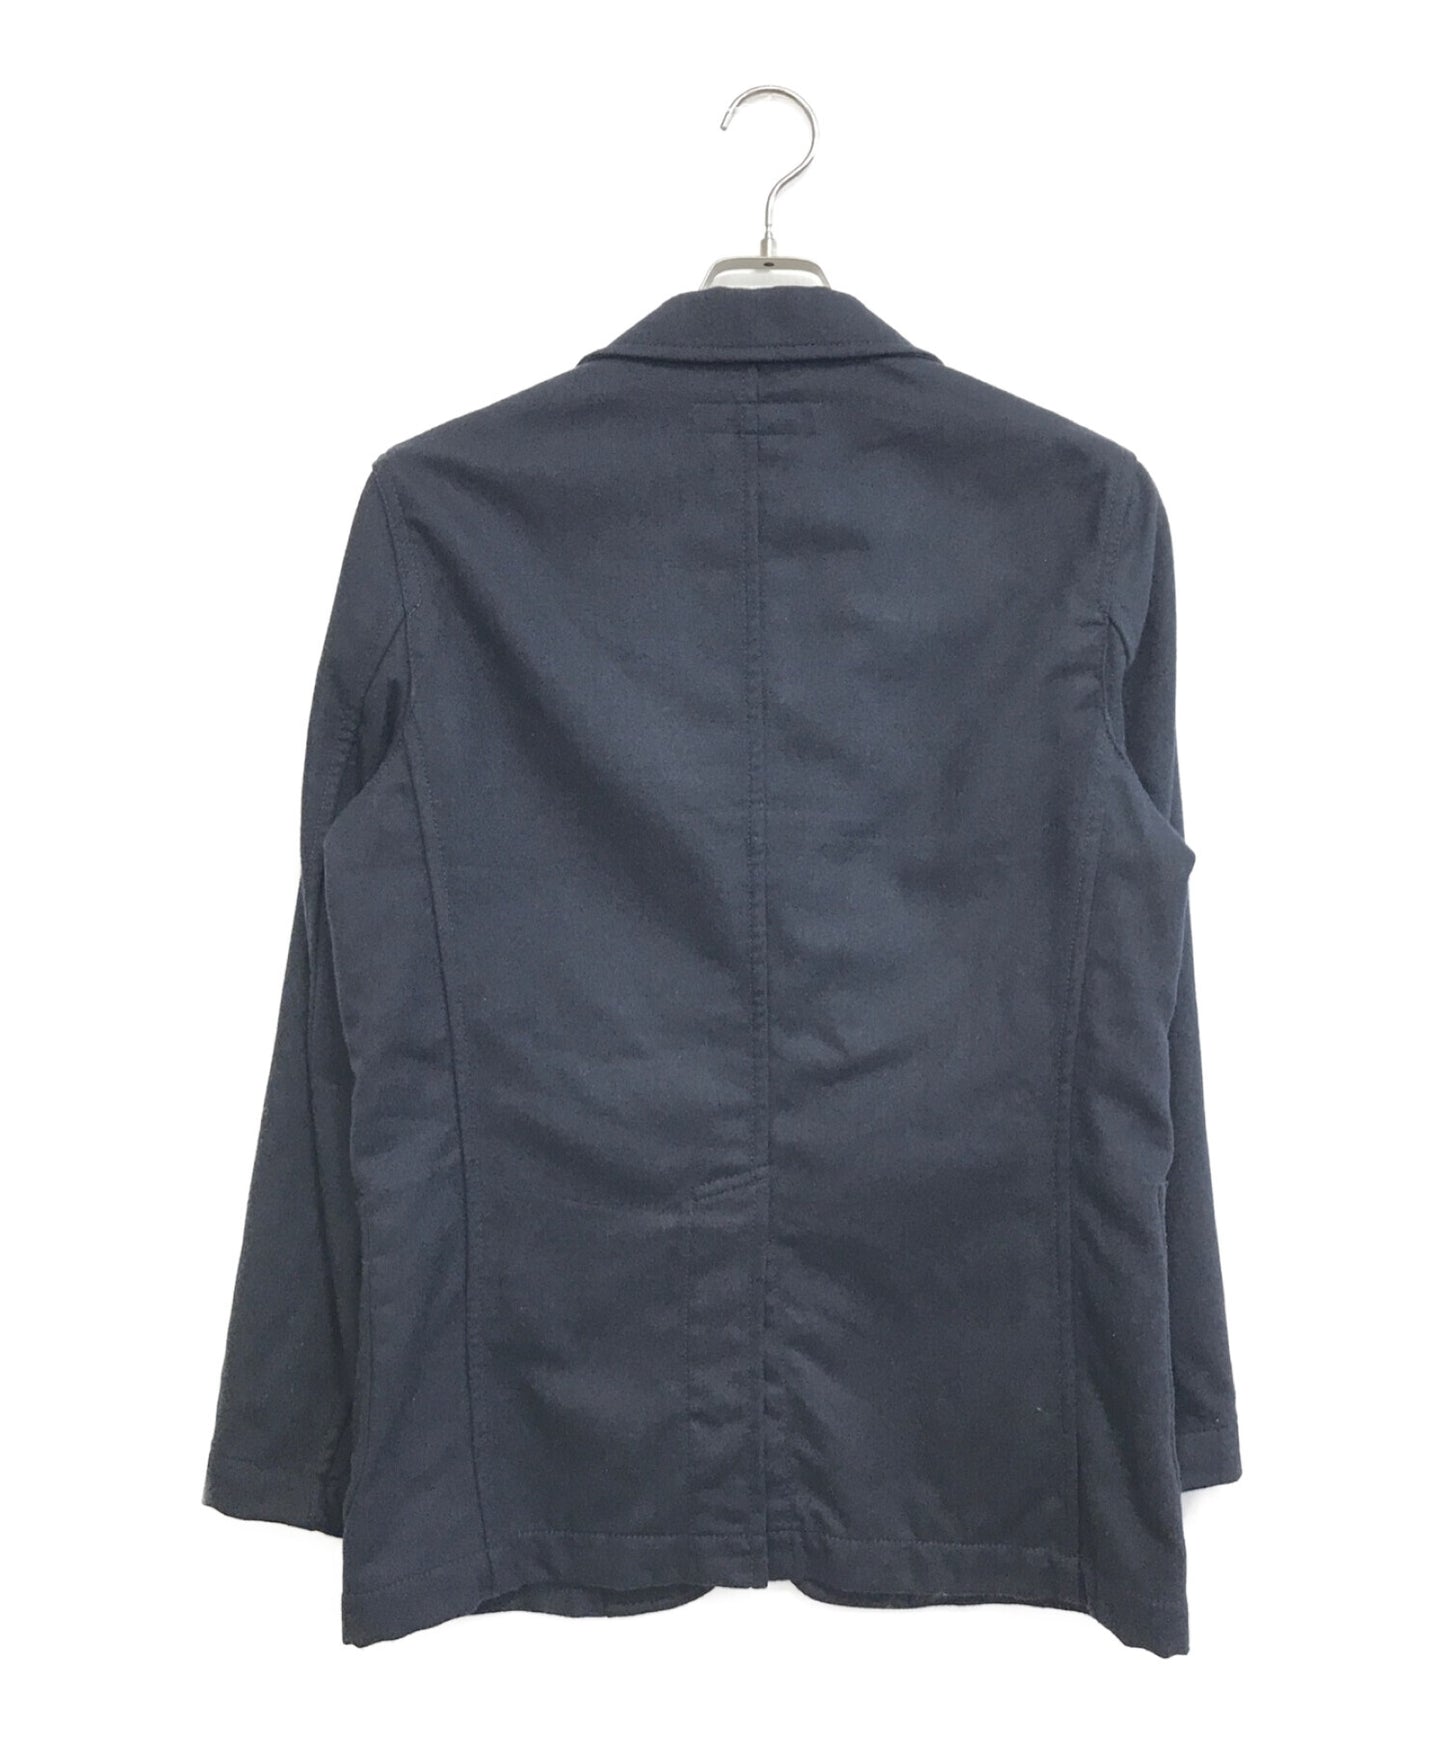 COMME DES GARCONS襯衫多粉混合羊毛縫製夾克W22157